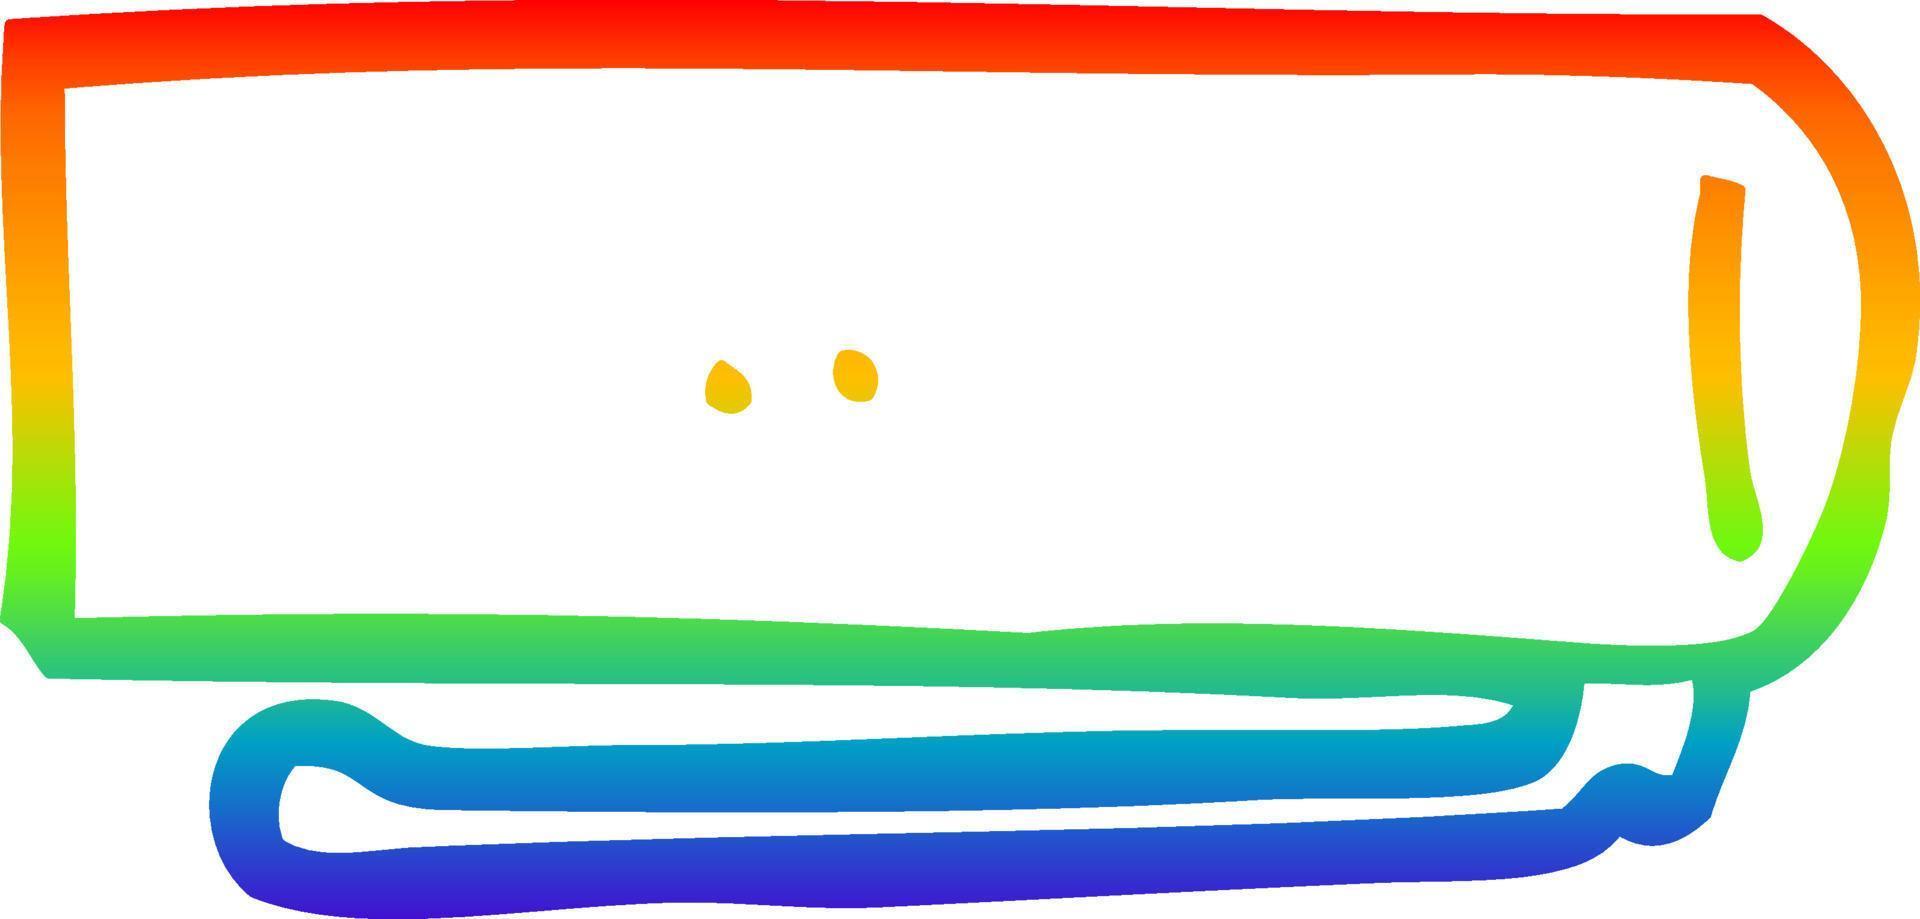 rainbow gradient line drawing cartoon pen lid vector